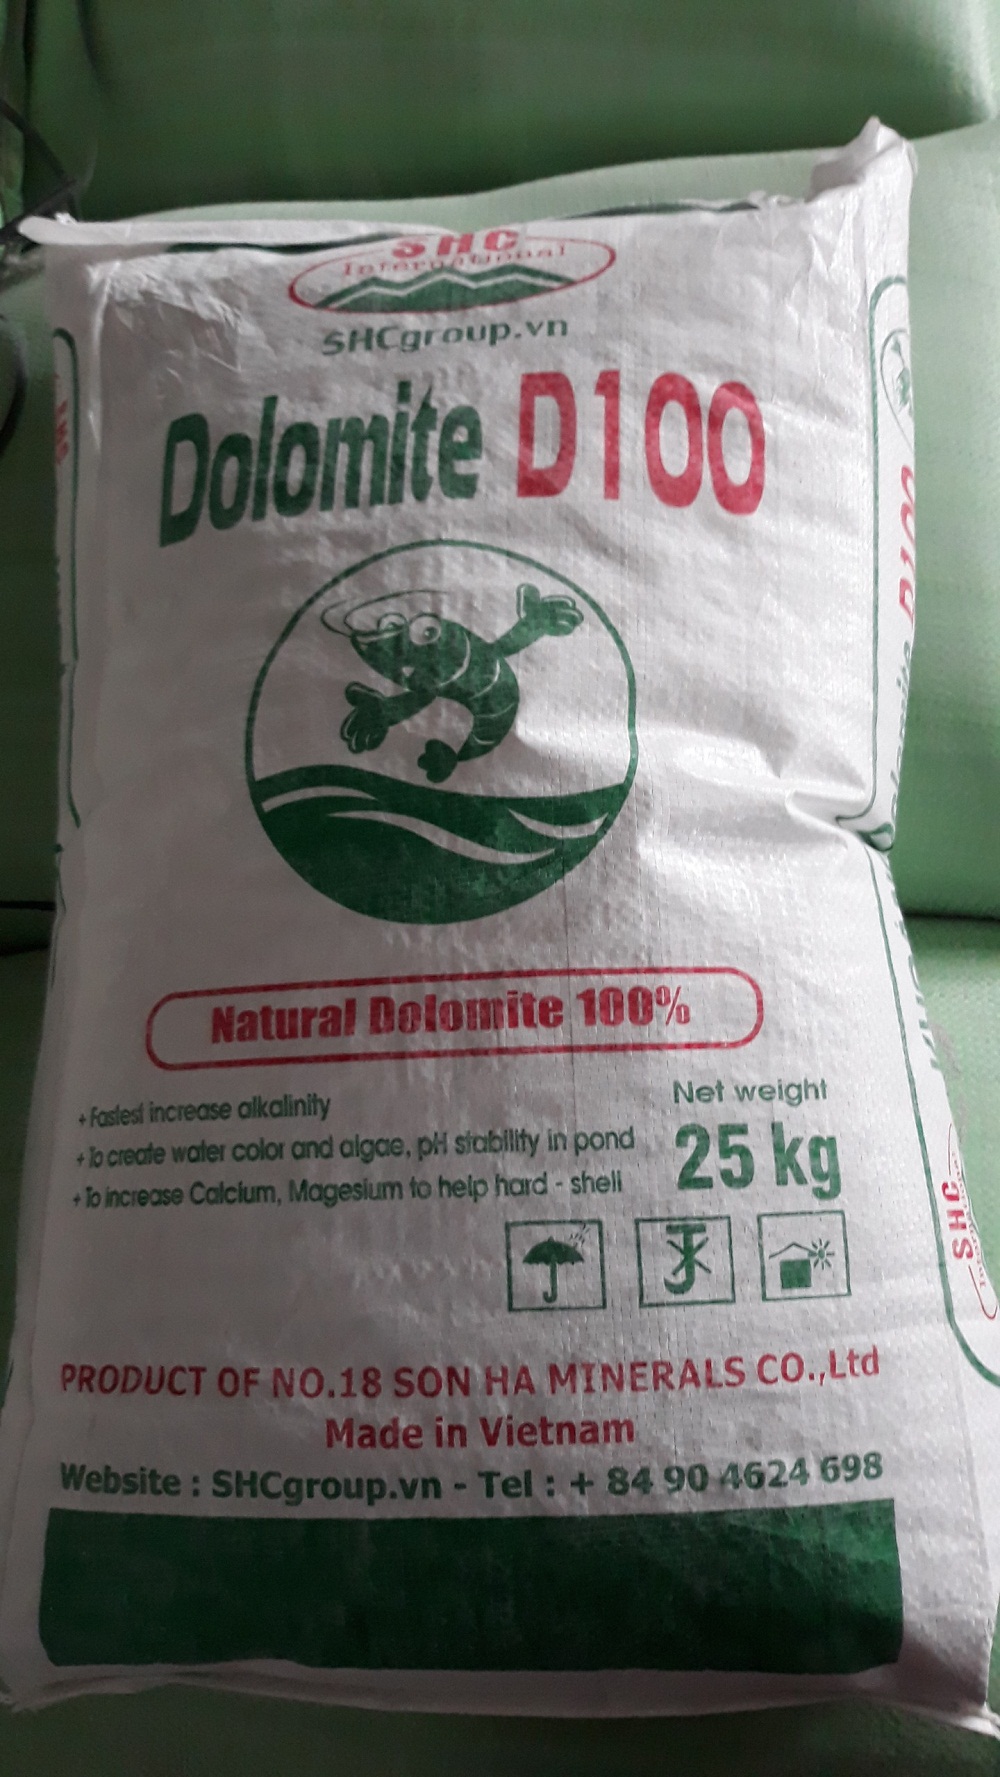 Dolomite D100 hàm lượng MgO 19%